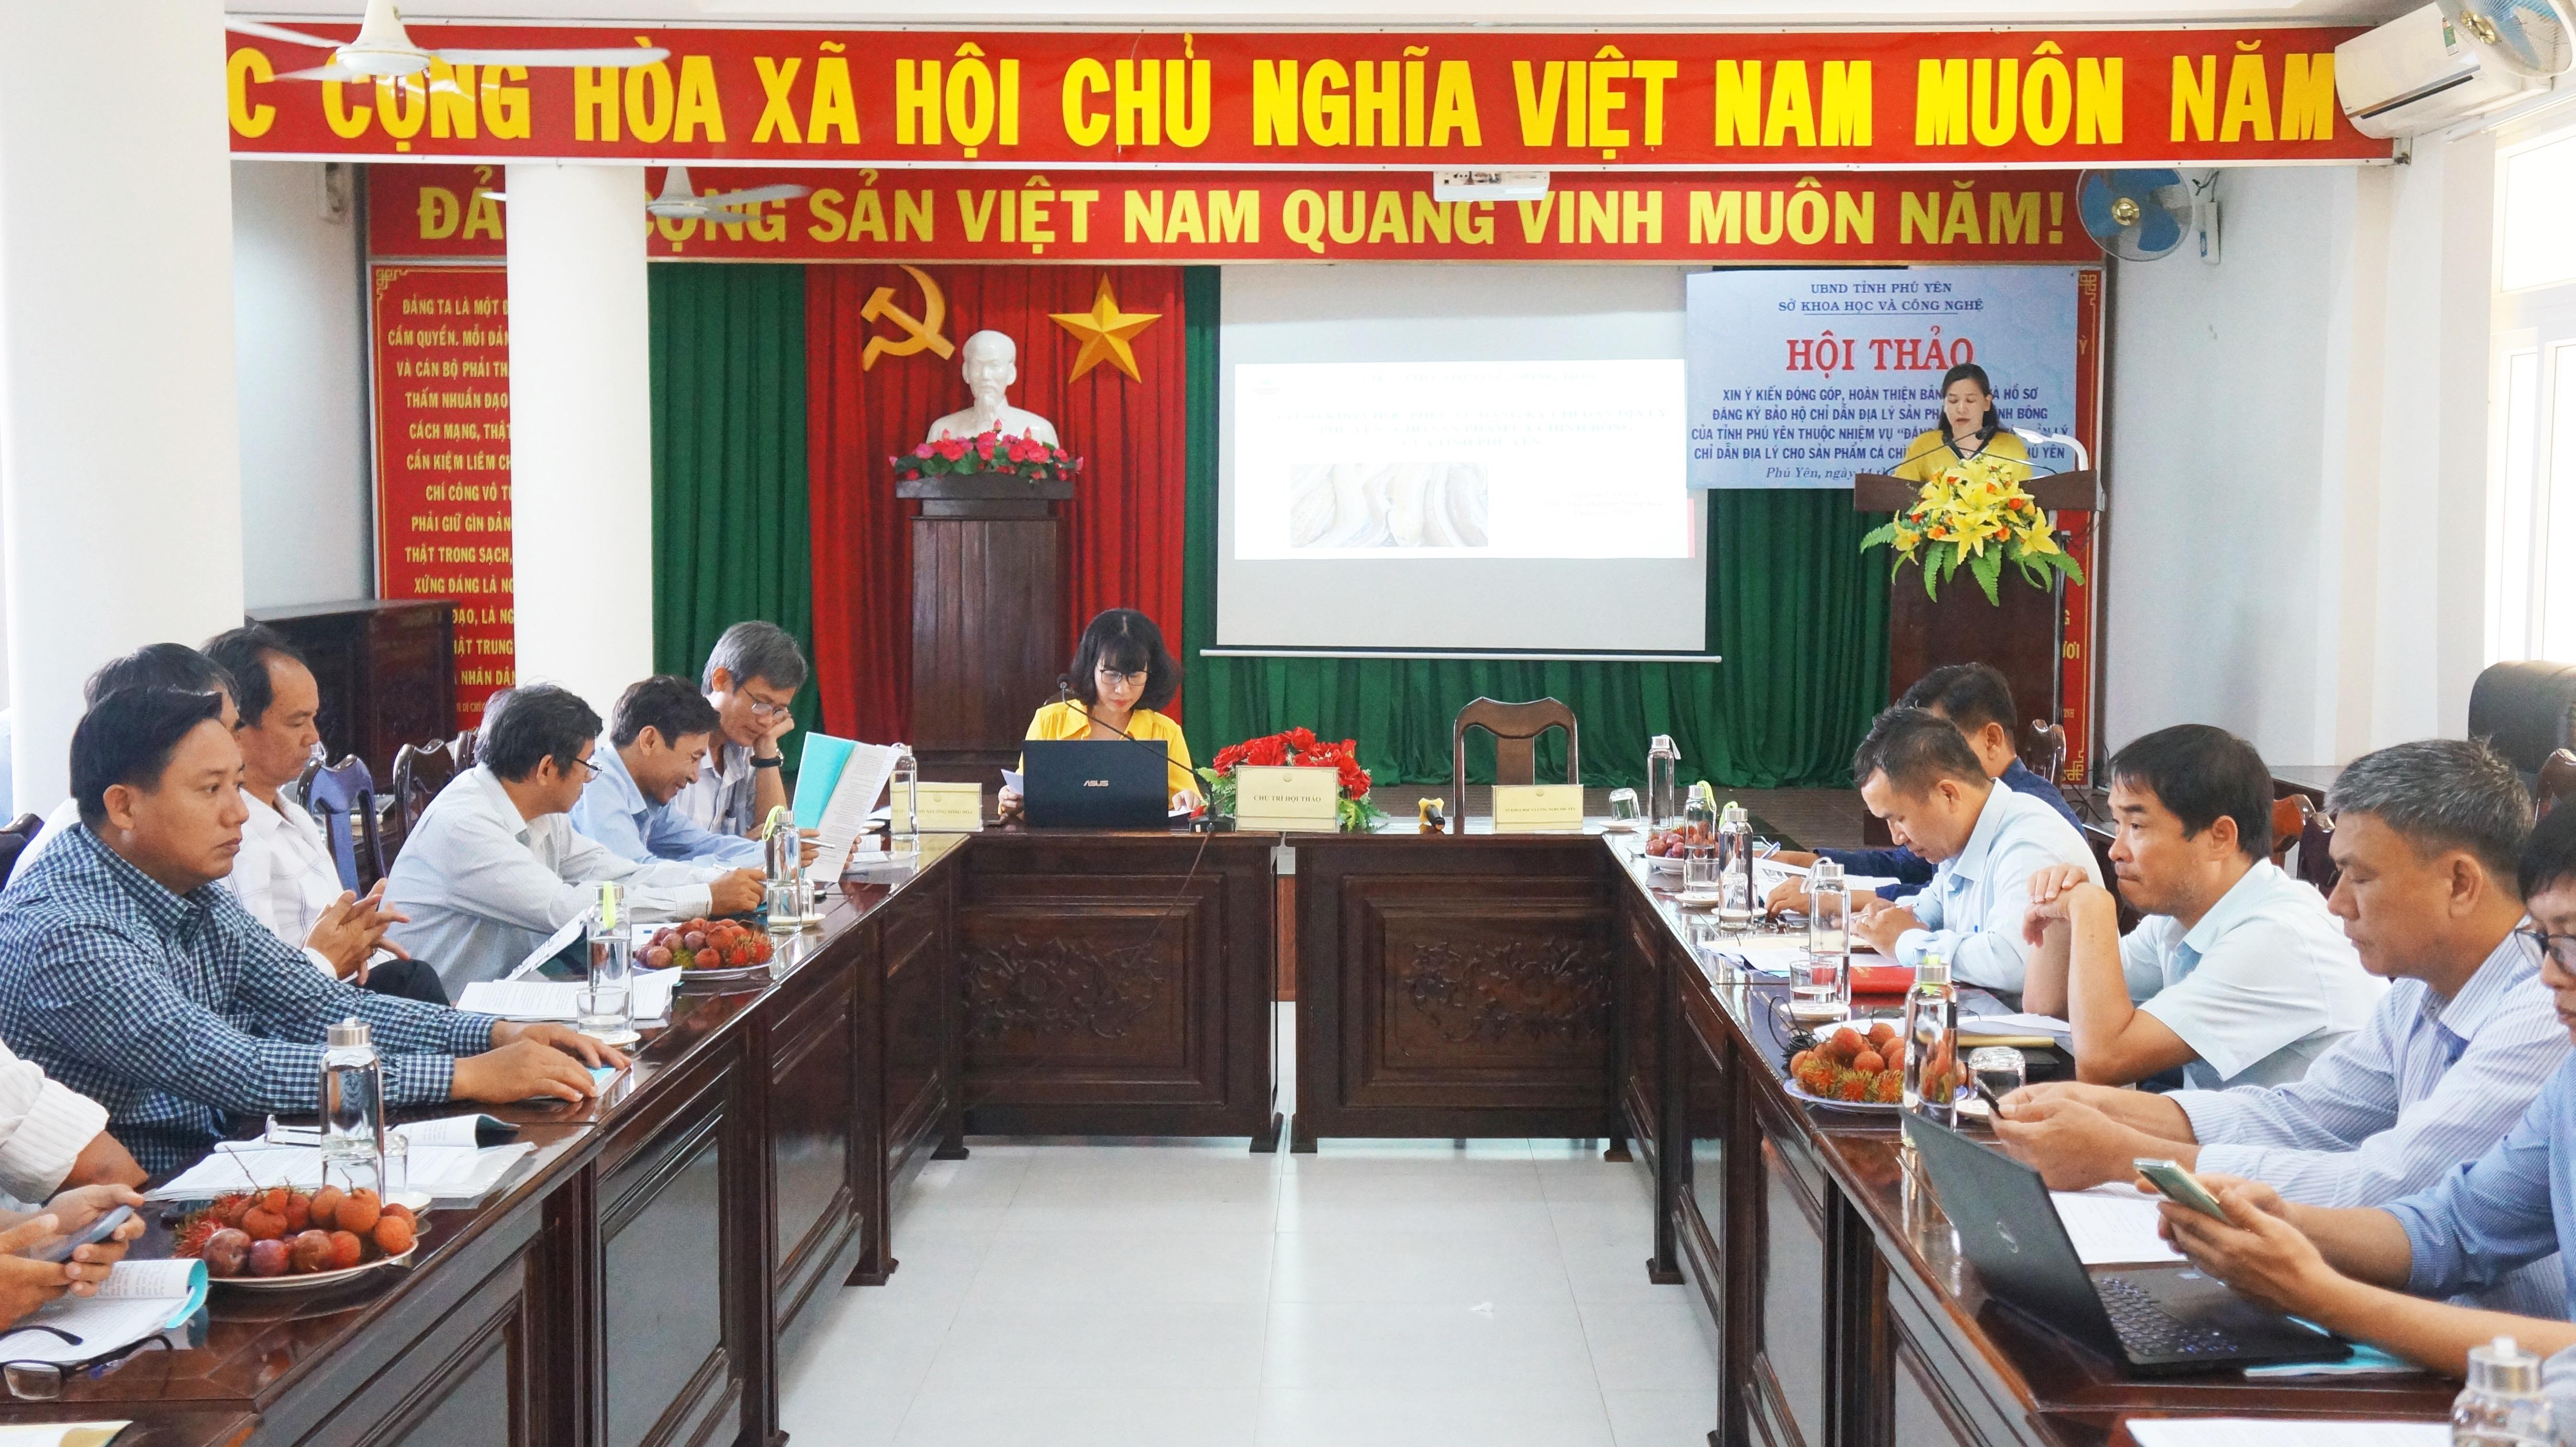 Hội thảo đăng ký bảo hộ chỉ dẫn địa lý cá chình bông Phú Yên